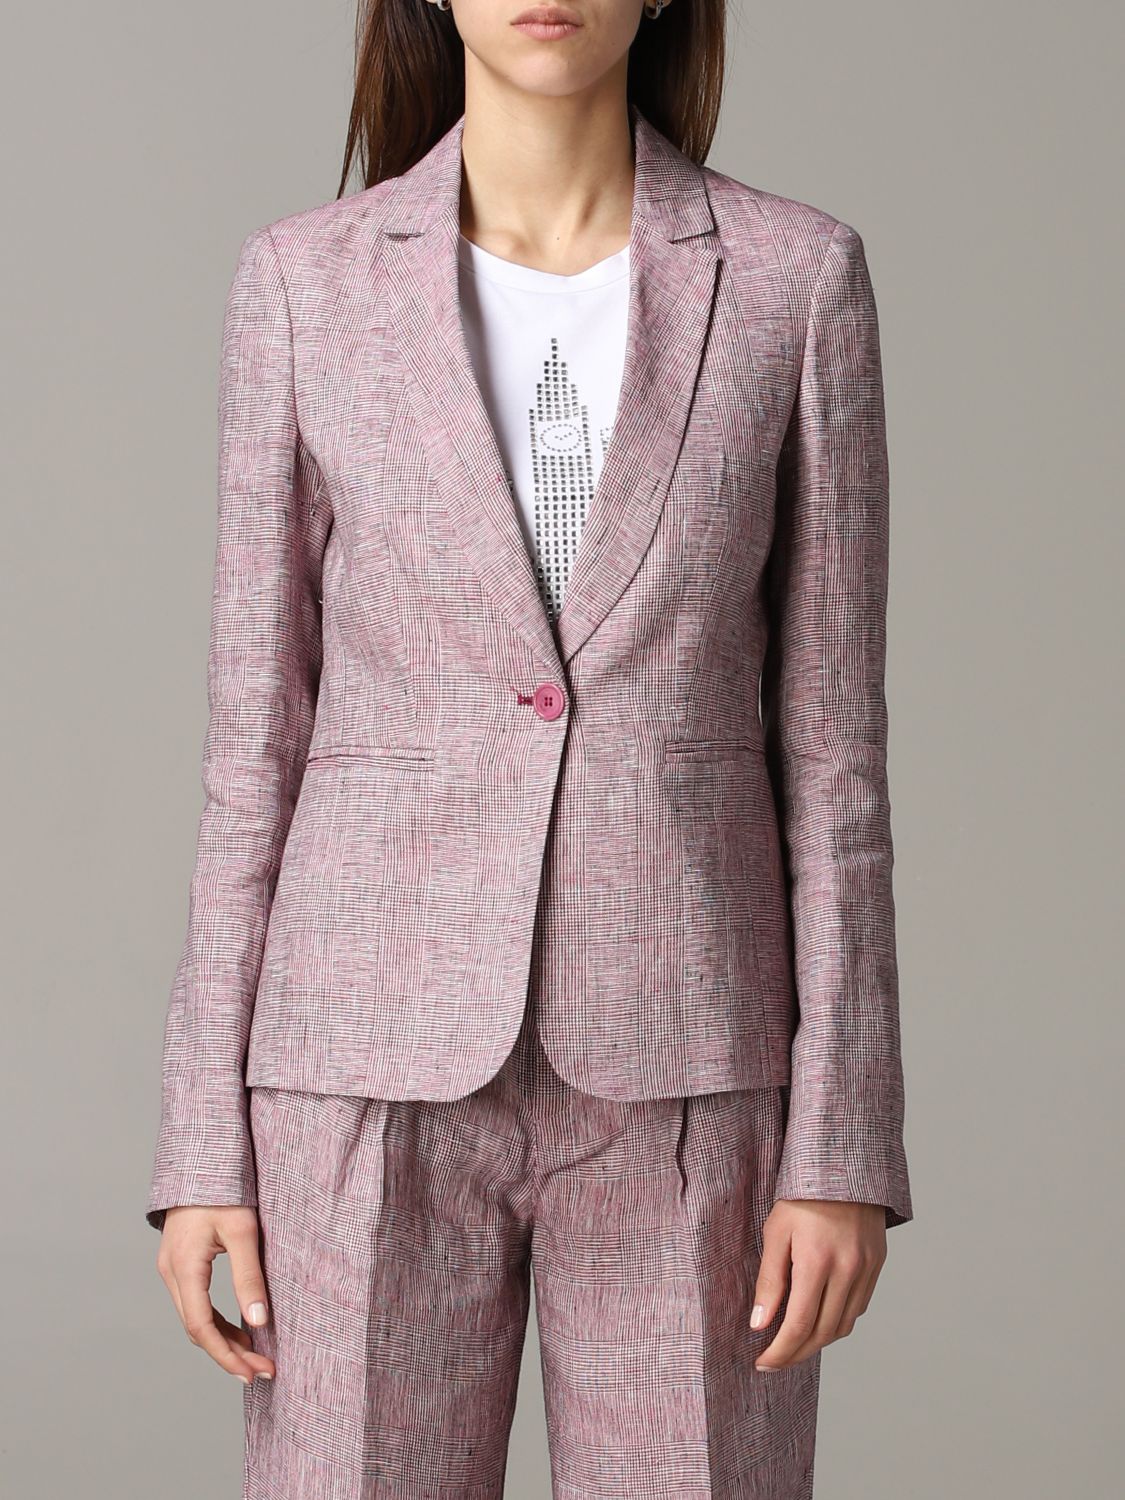 opvoeder goedkoop Rijpen Liu Jo Outlet: single-breasted jacket - Strawberry | Liu Jo suit  FA0304T4185 online on GIGLIO.COM